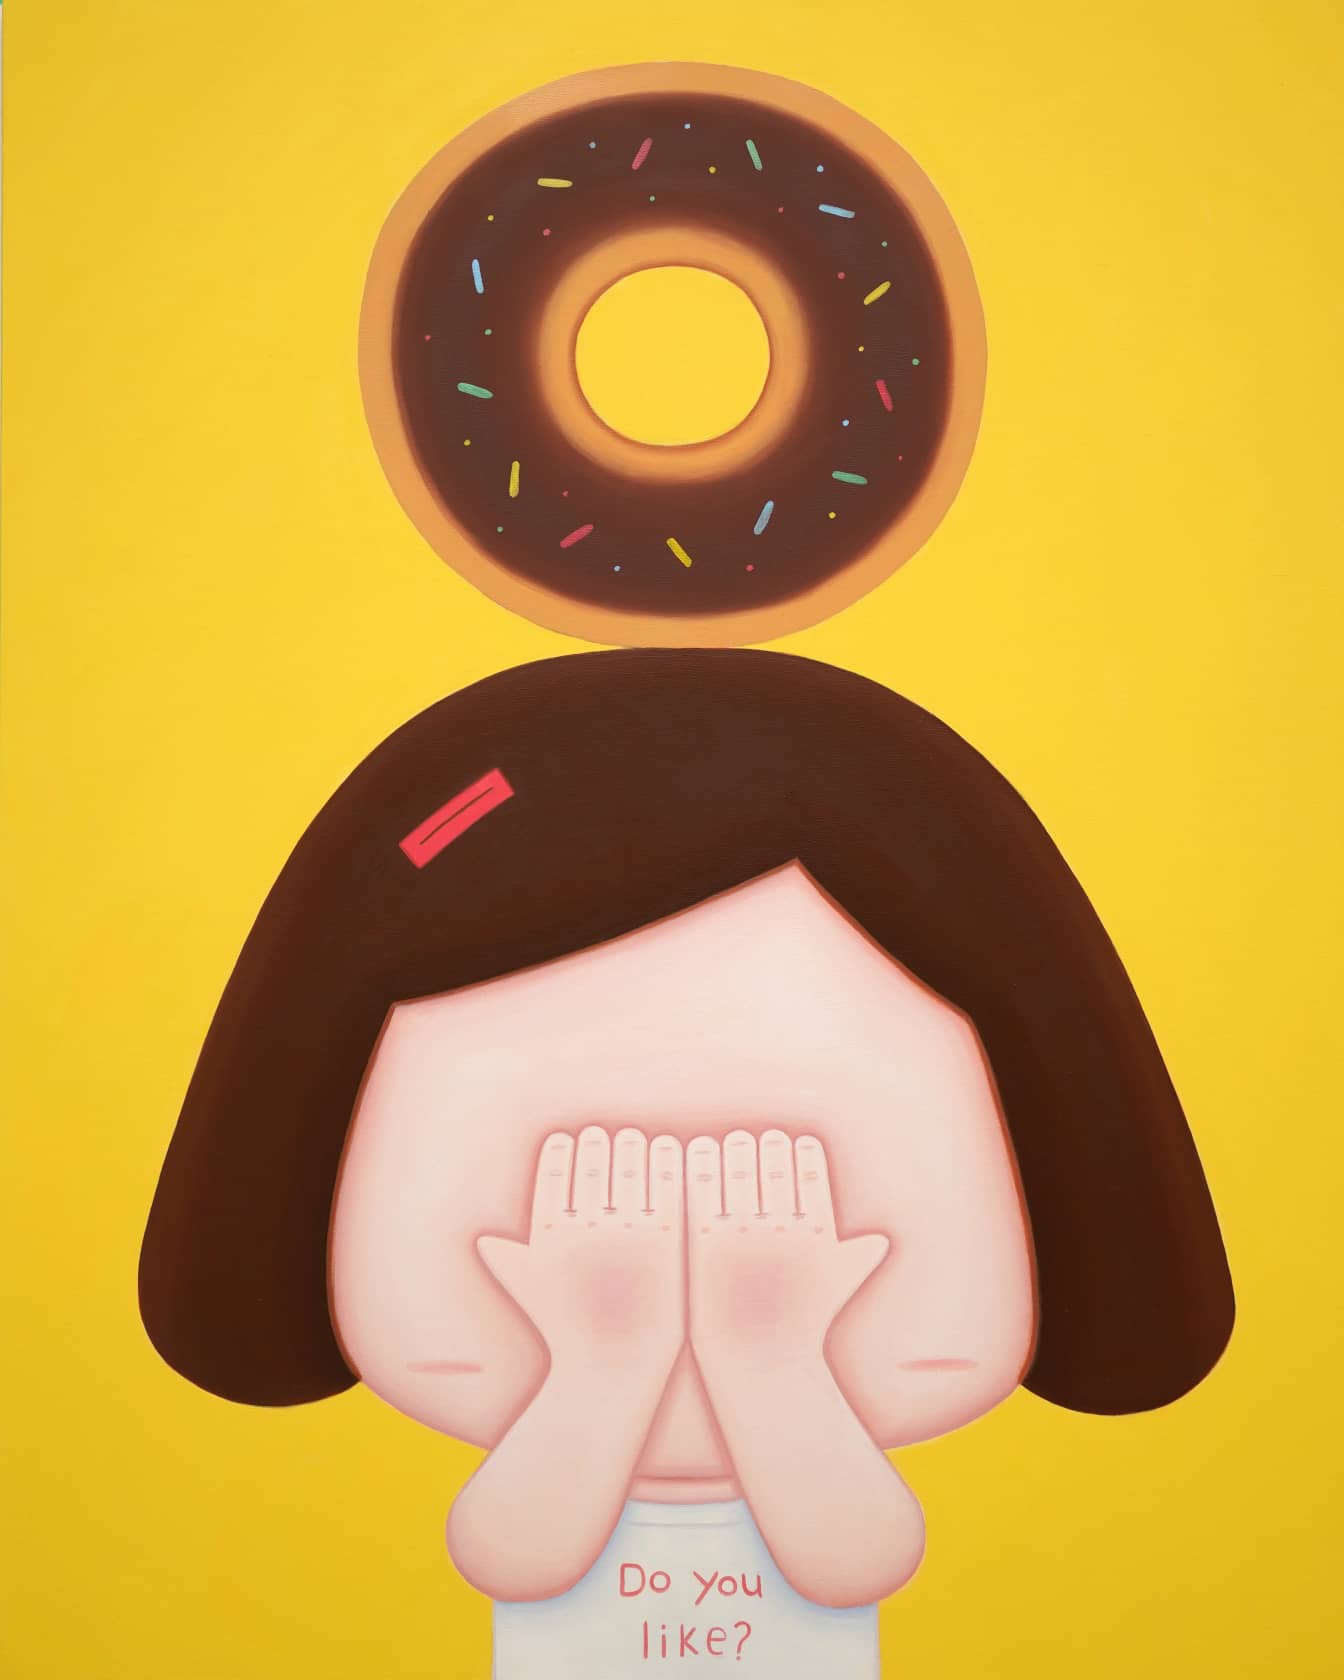 Jo Gyuhun, Do you like doughnut?, 2022